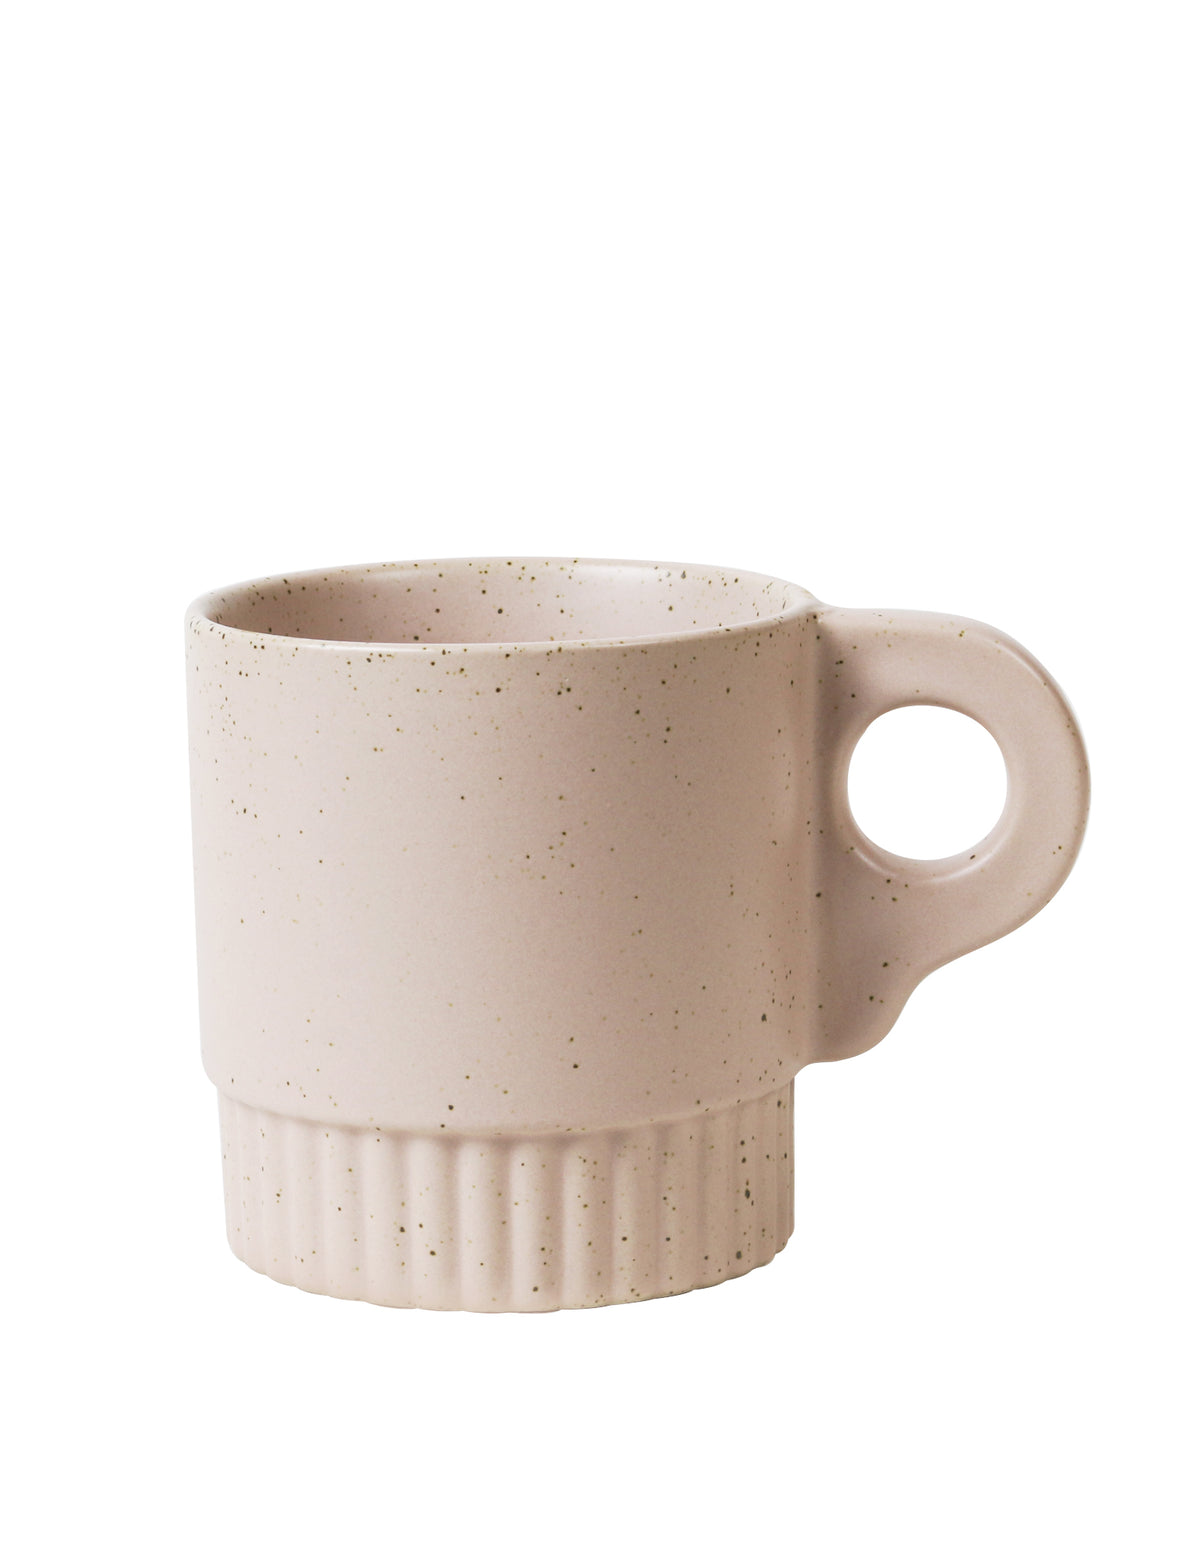 Mauve Mug Ornate Handle / RGA x MoVida